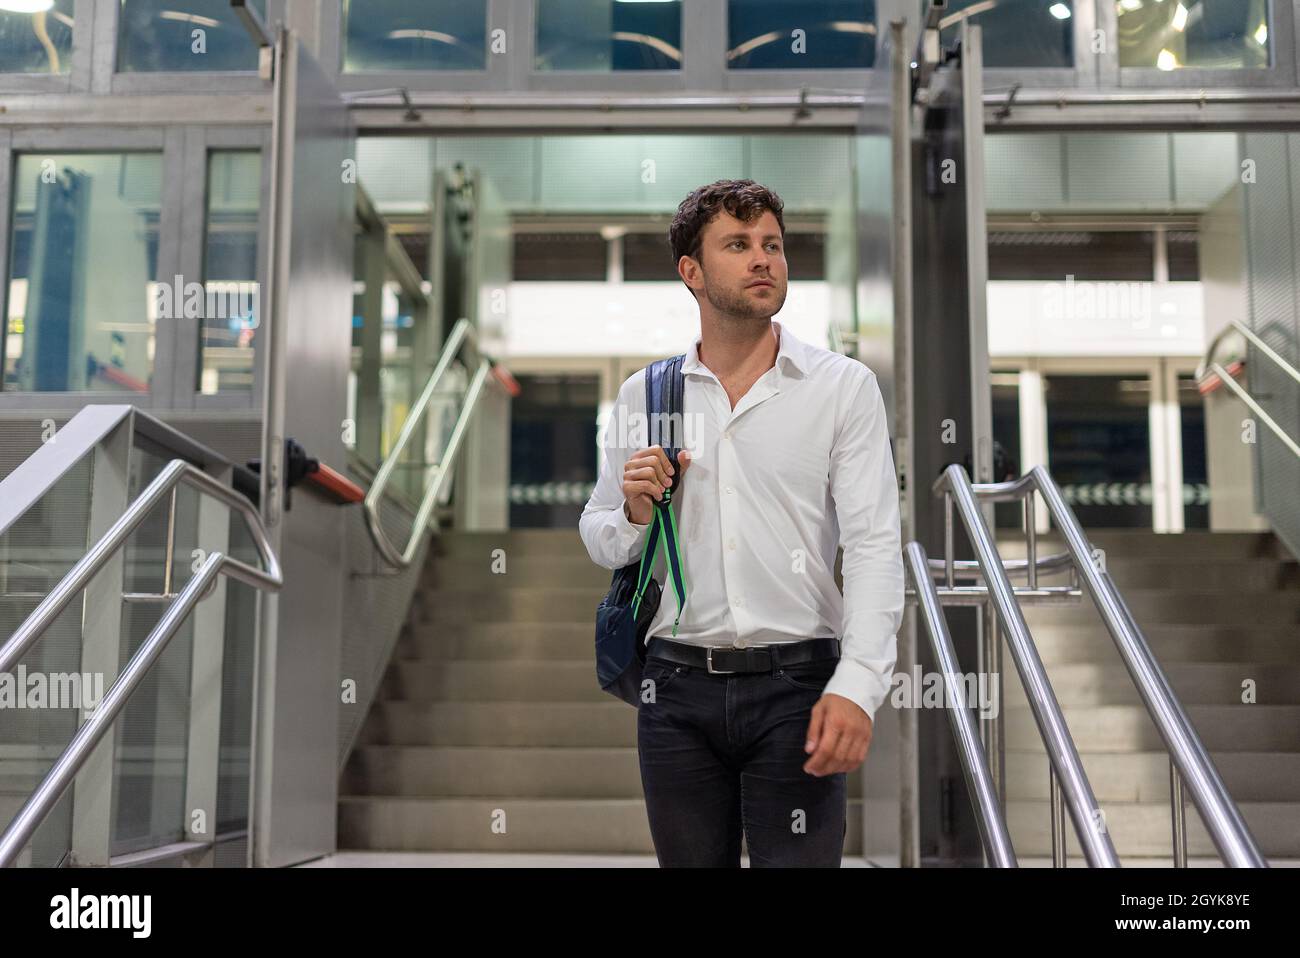 Hombre gerente en ropa informal elegante con bolsa de transporte y mirar lejos mientras se encuentra en las escaleras en el aeropuerto durante un viaje de negocios Foto de stock